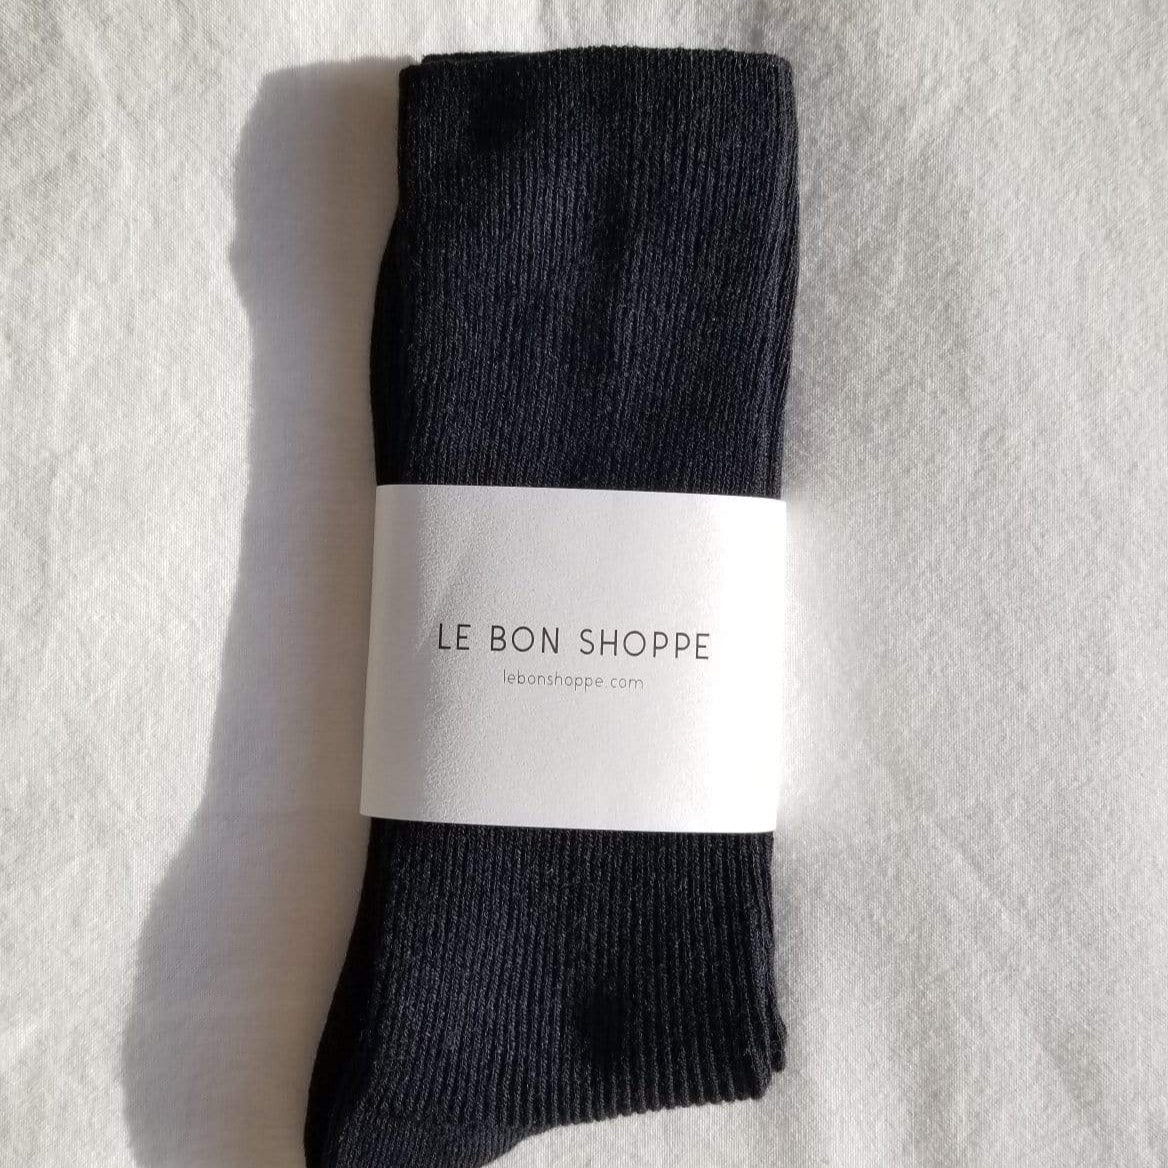 trouser socks. Black by Le Bon Shoppe